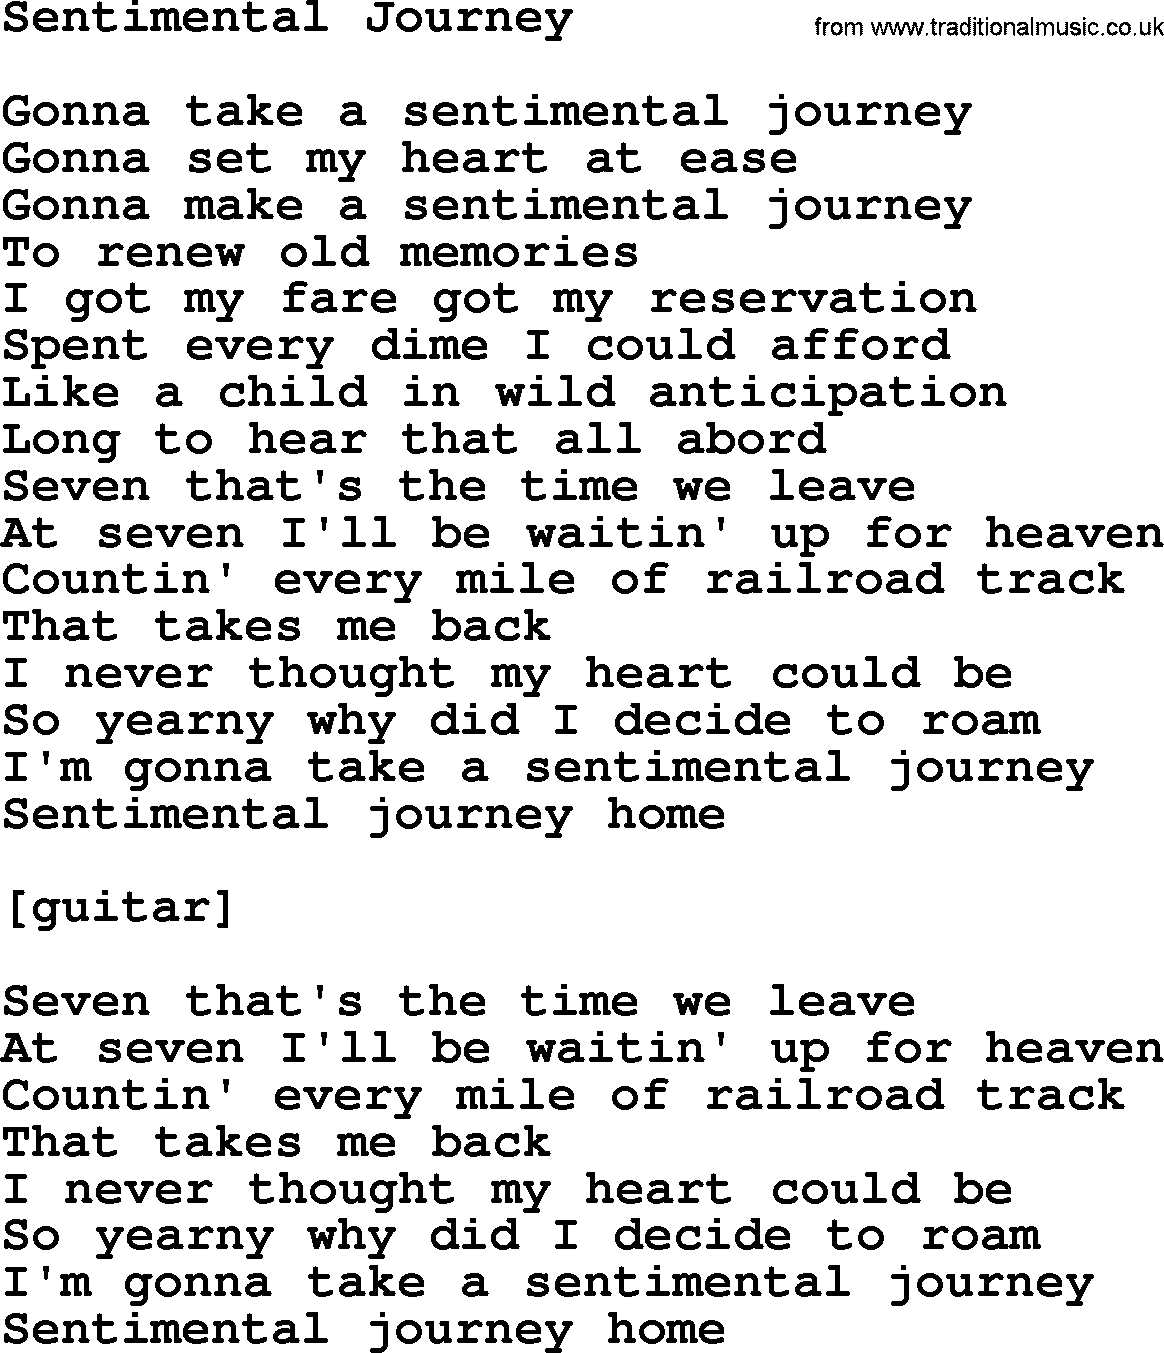 Willie Nelson song: Sentimental Journey lyrics